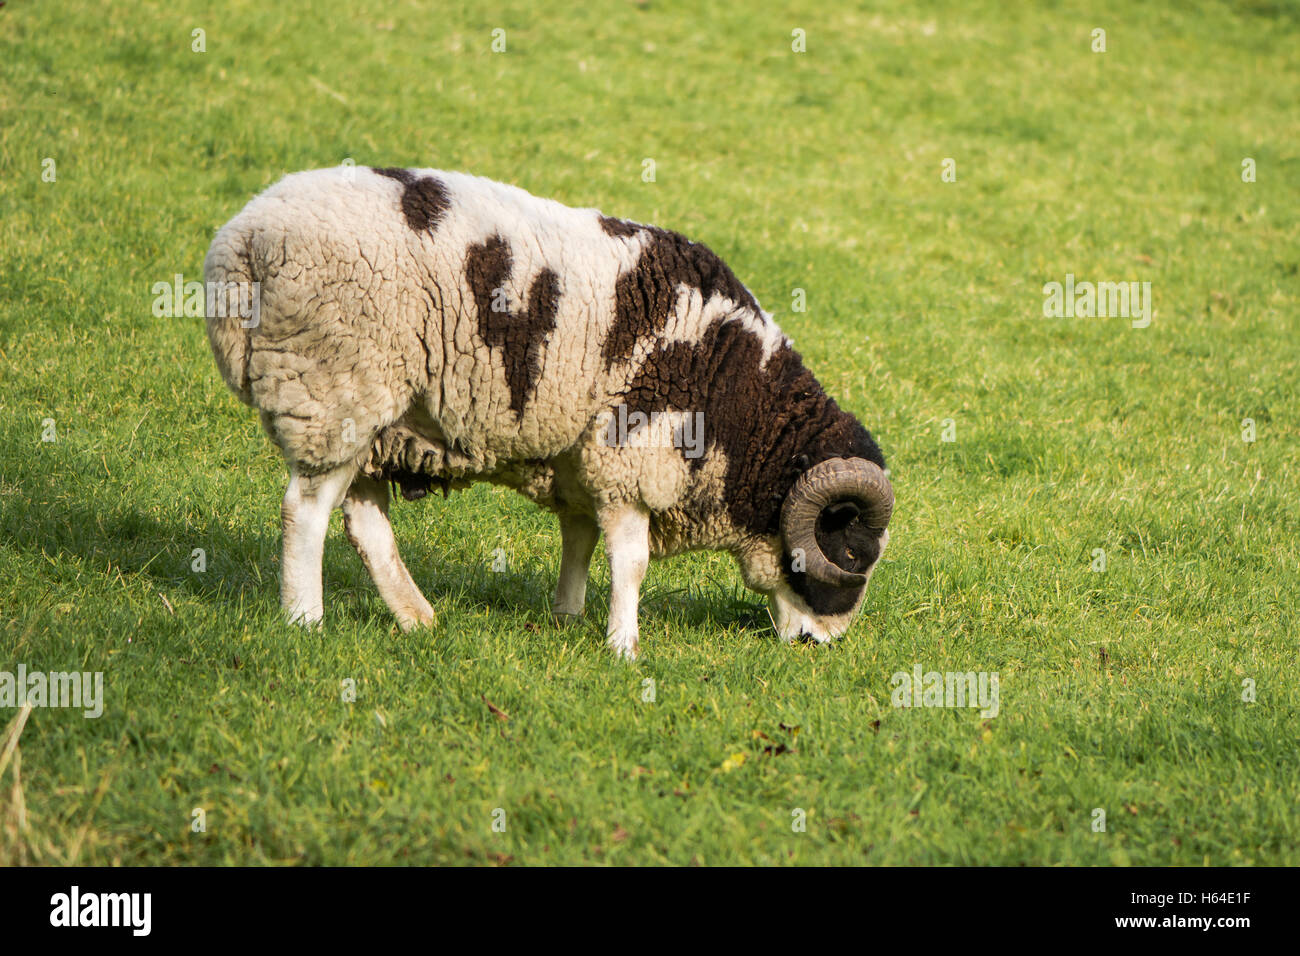 Zwei Horn Stammbaum Jacob Schaf Ram. Seltene braune und weiße gescheckten Schafe, gehalten als ornamentale Haustier, mit zwei gebogenen Hörnern Stockfoto